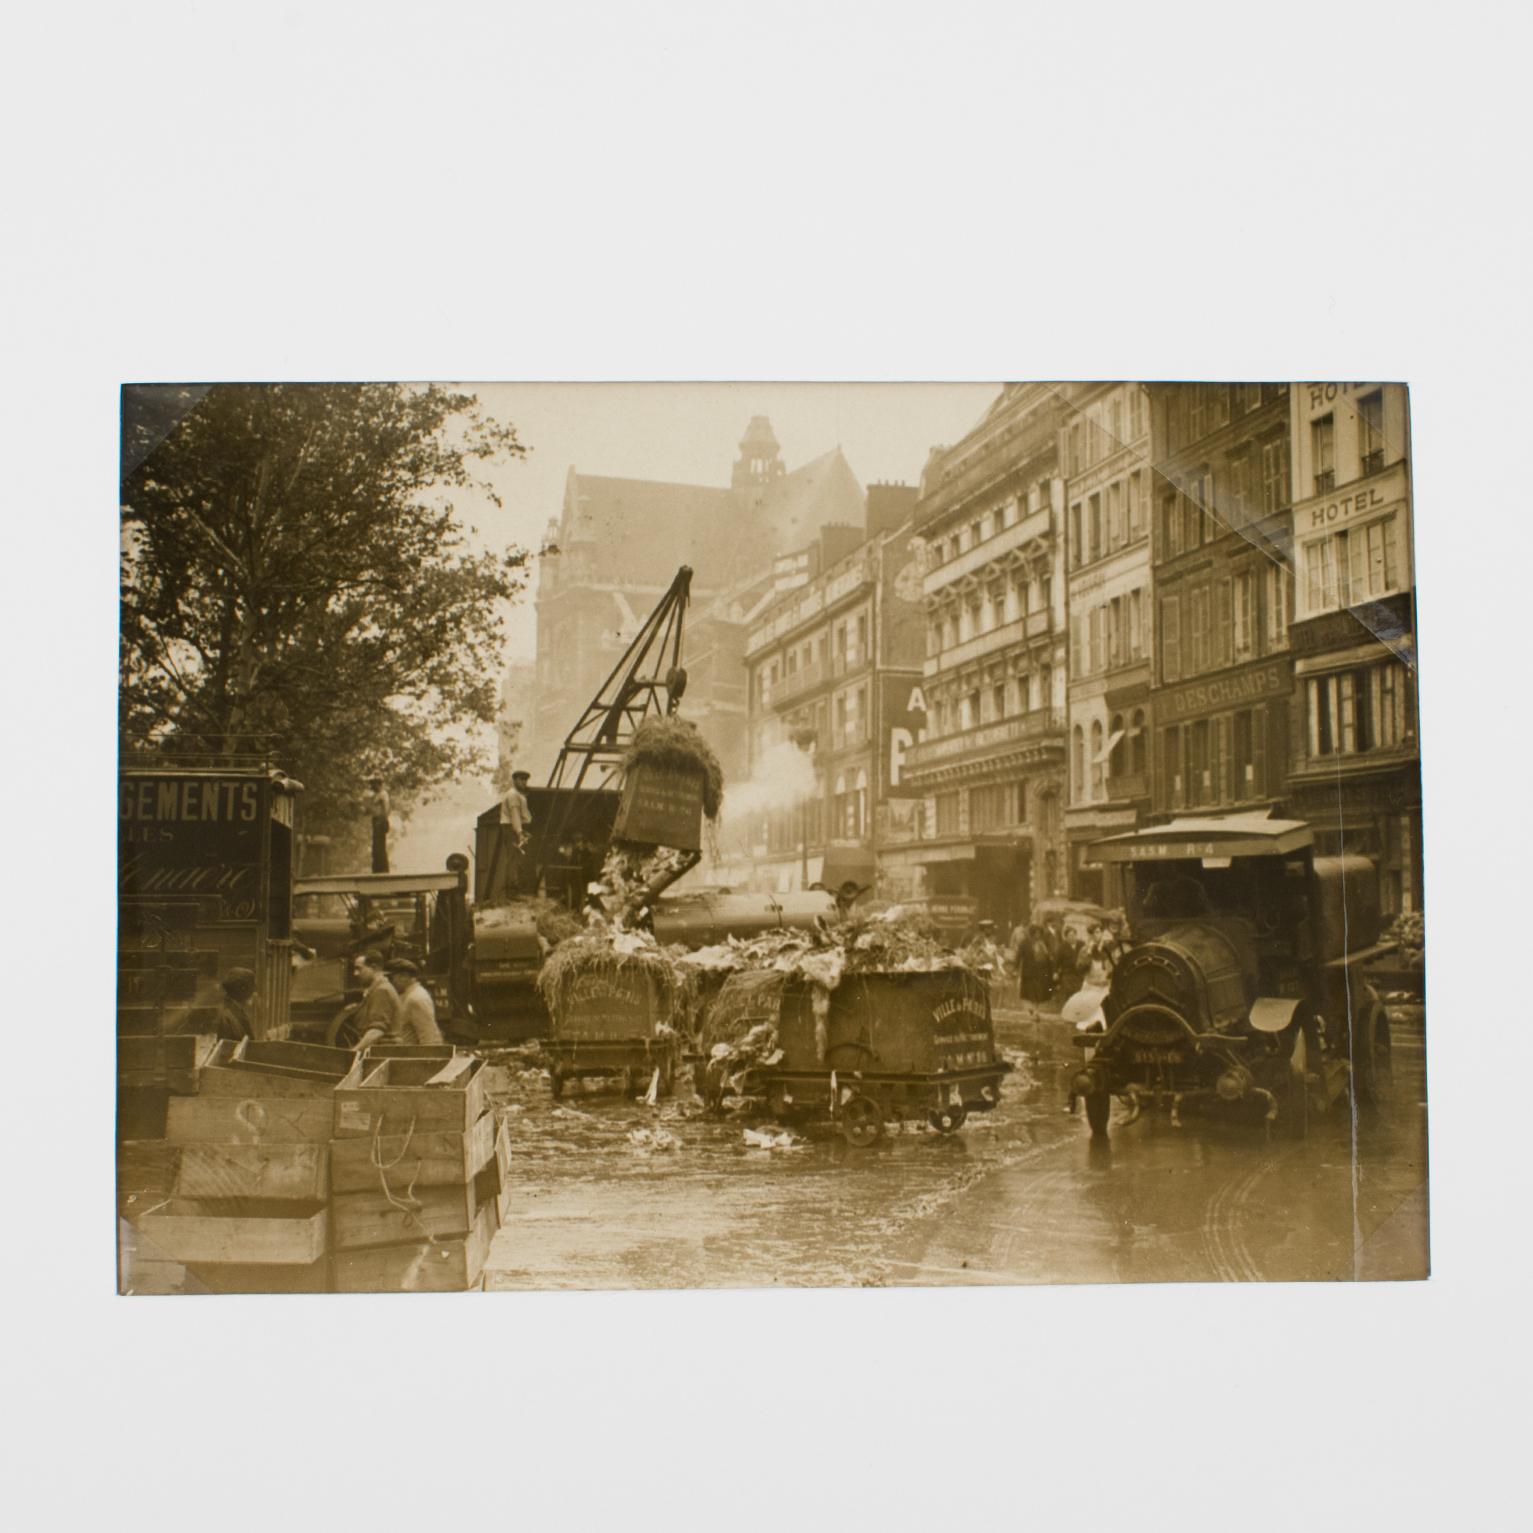 Paris, Les Halles Lebensmittelmarkt, 1930er Jahre, Silber-Gelatine-Schwarz-Weiß-Fotografie in Schwarz und Weiß – Photograph von Press Agency Keystone View Co.